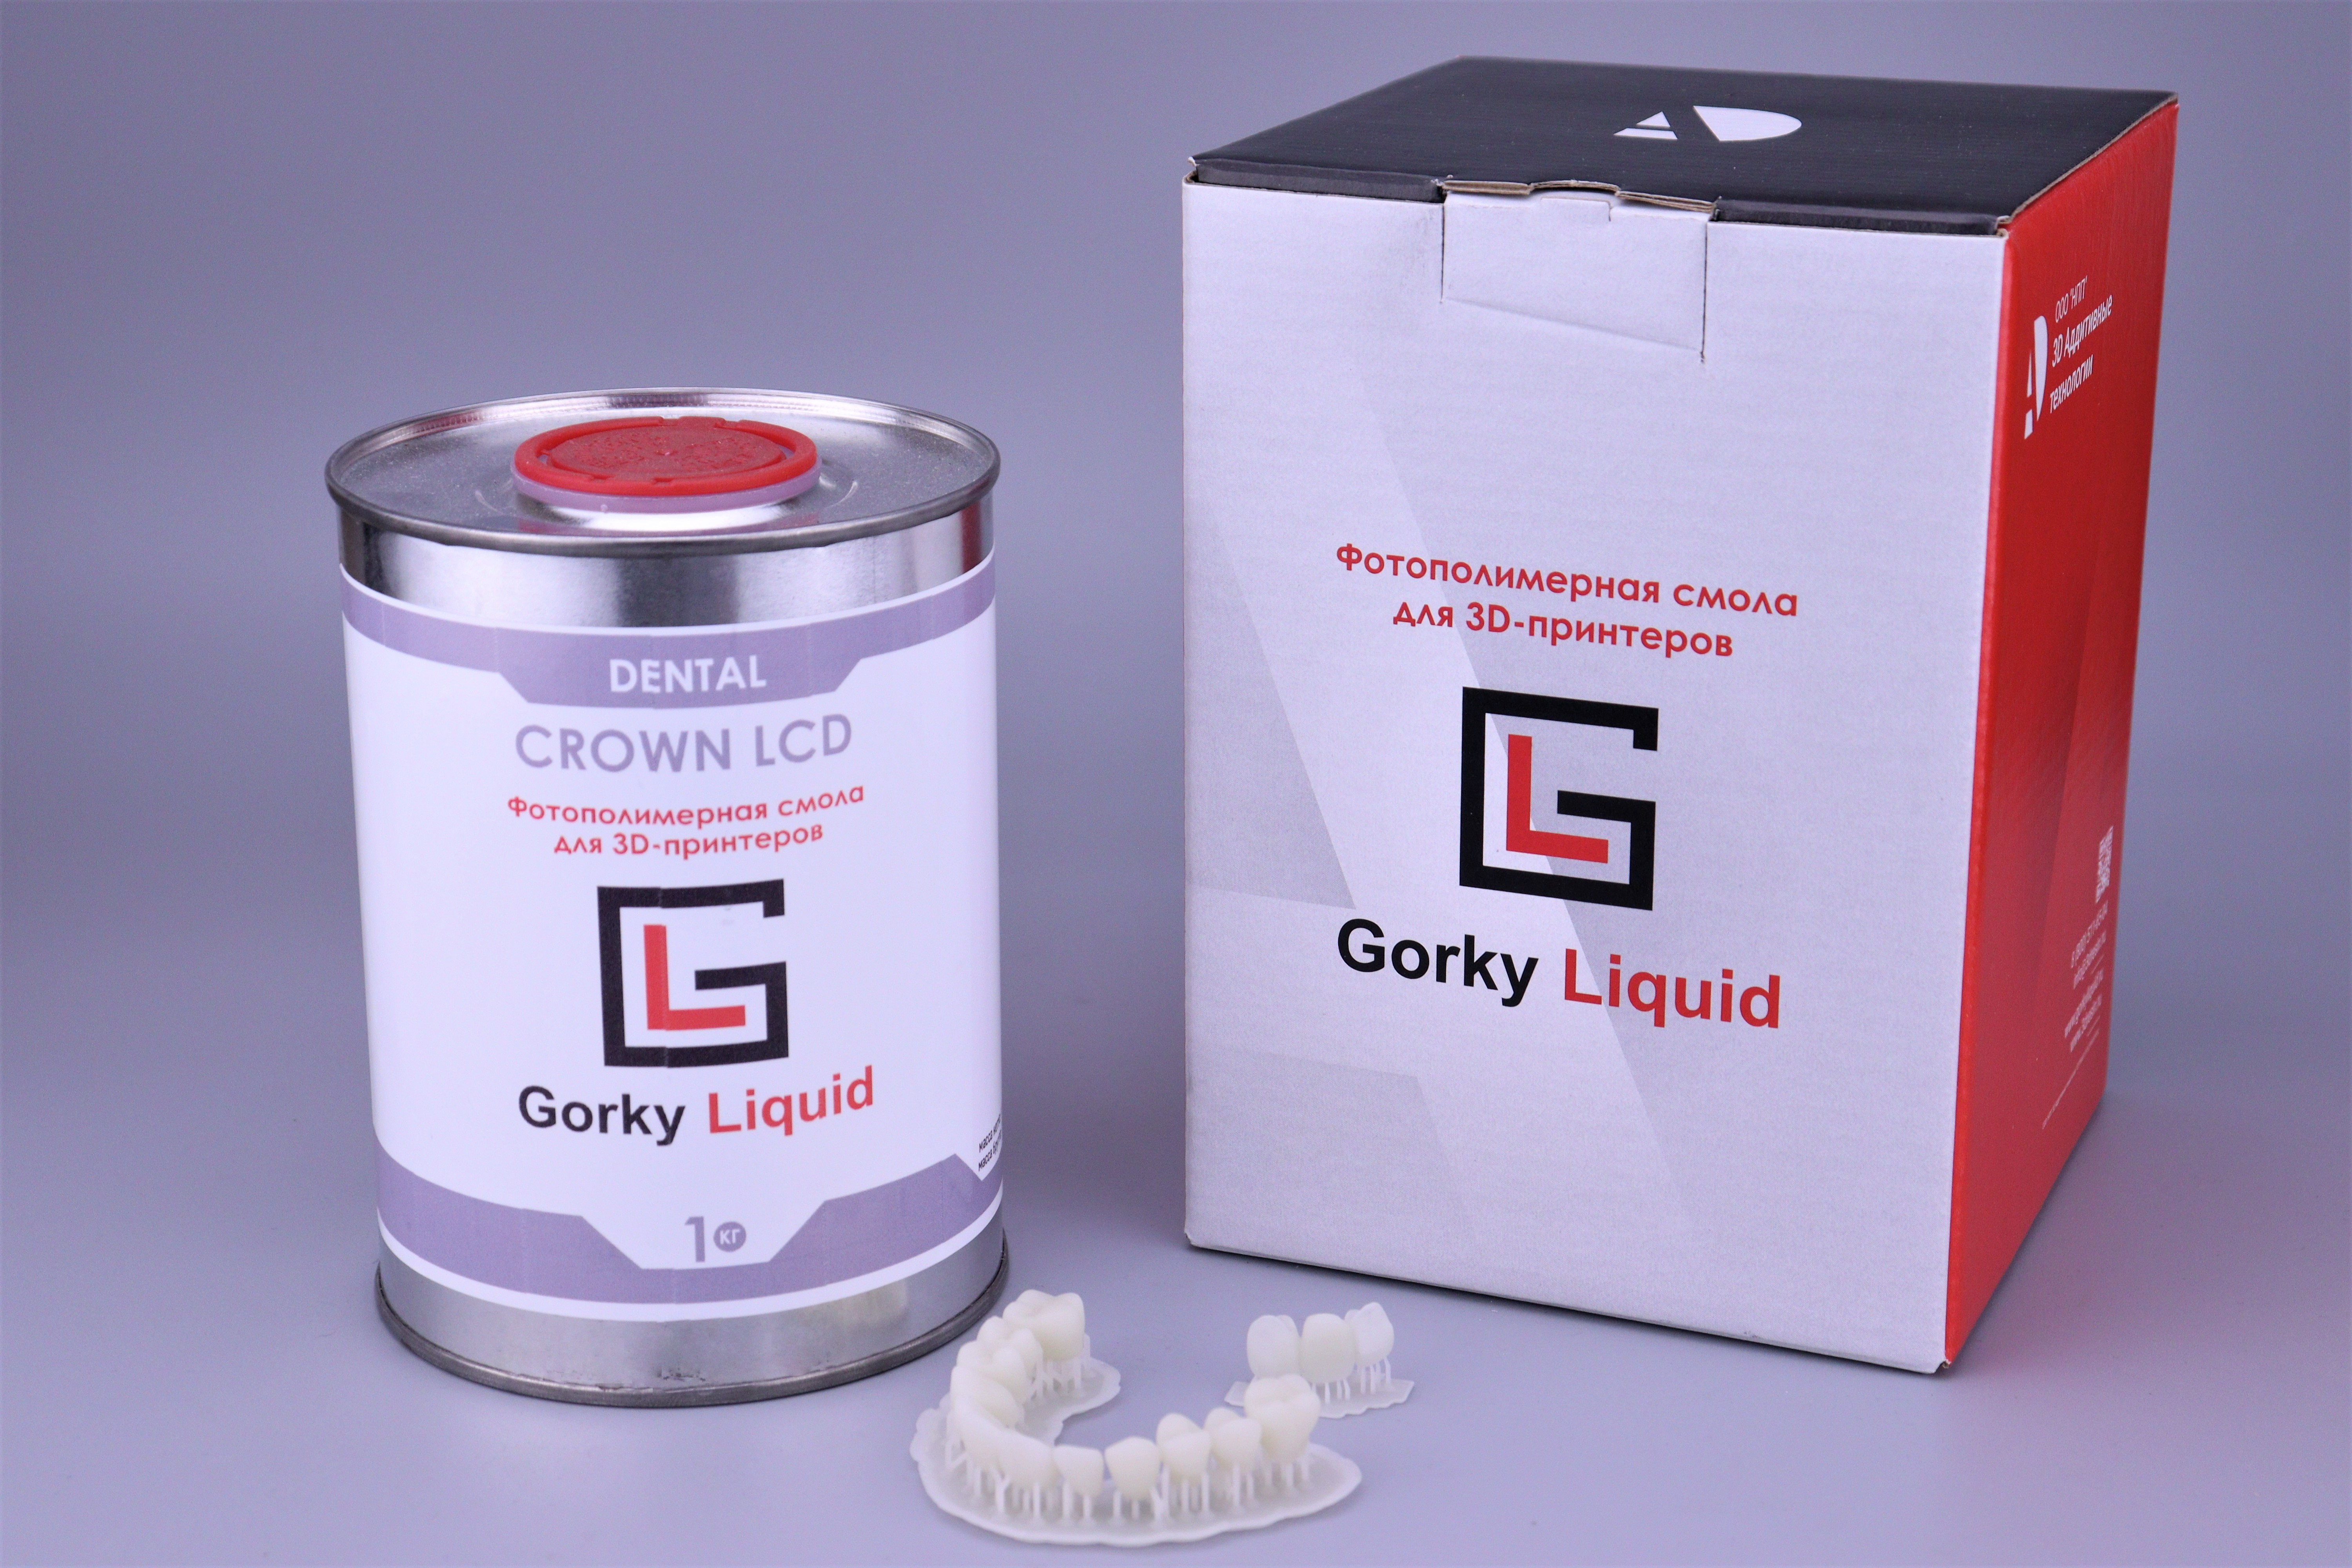 "Dental Crown" A1-A2 LCD/DLP 1 кг фотополимерная смола Gorky Liquid